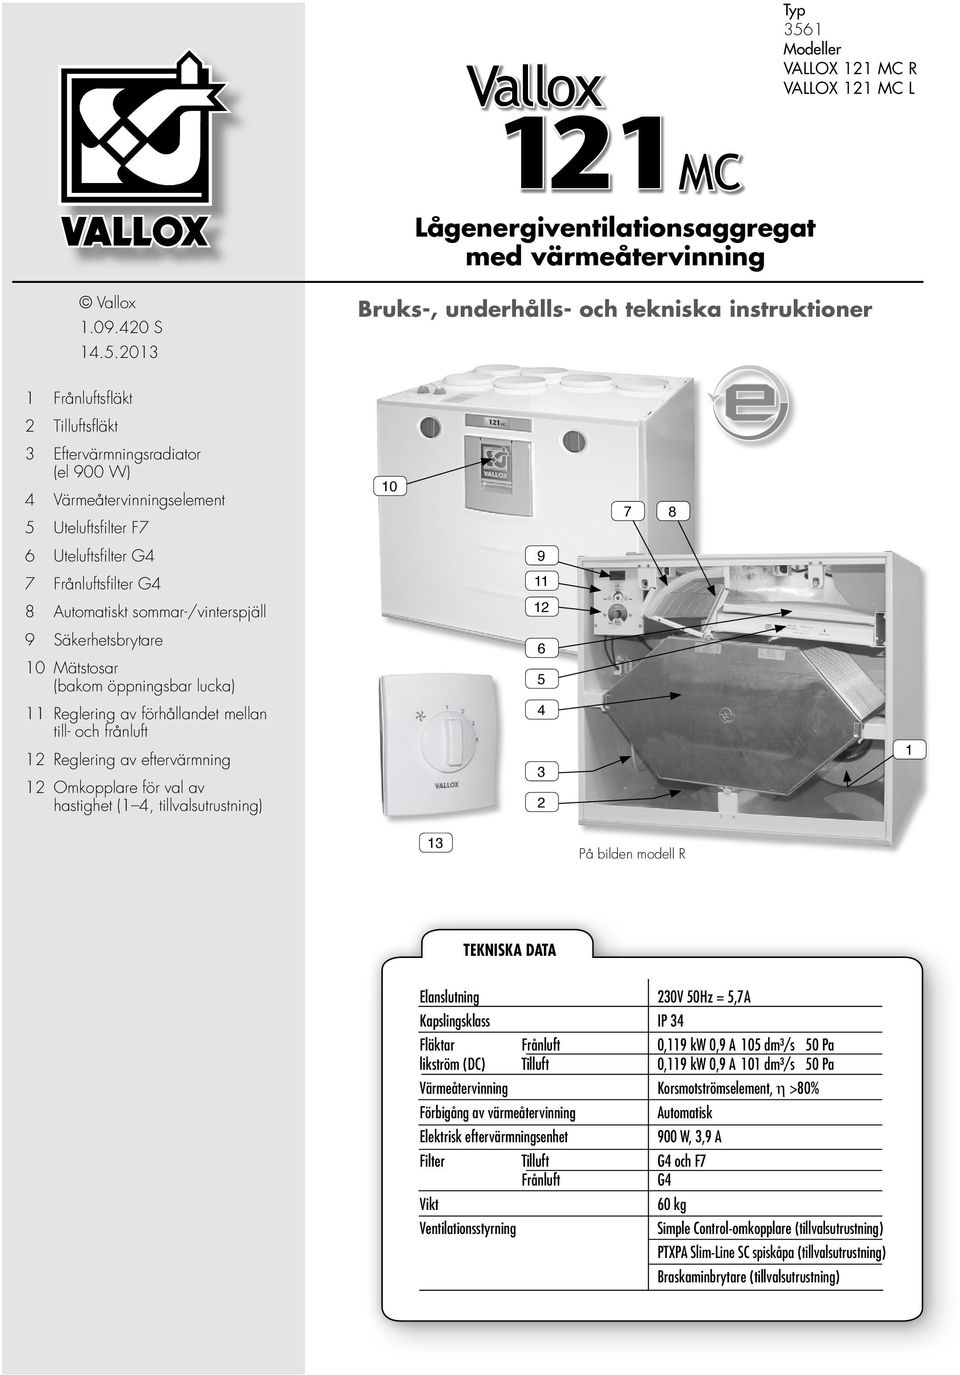 2013 Bruks-, underhålls- och tekniska instruktioner 1 Frånluftsfl äkt 2 Tilluftsfl äkt 3 Eftervärmningsradiator (el 900 W) 4 Värmeåtervinningselement 5 Uteluftsfi lter F7 10 7 8 6 Uteluftsfi lter G4